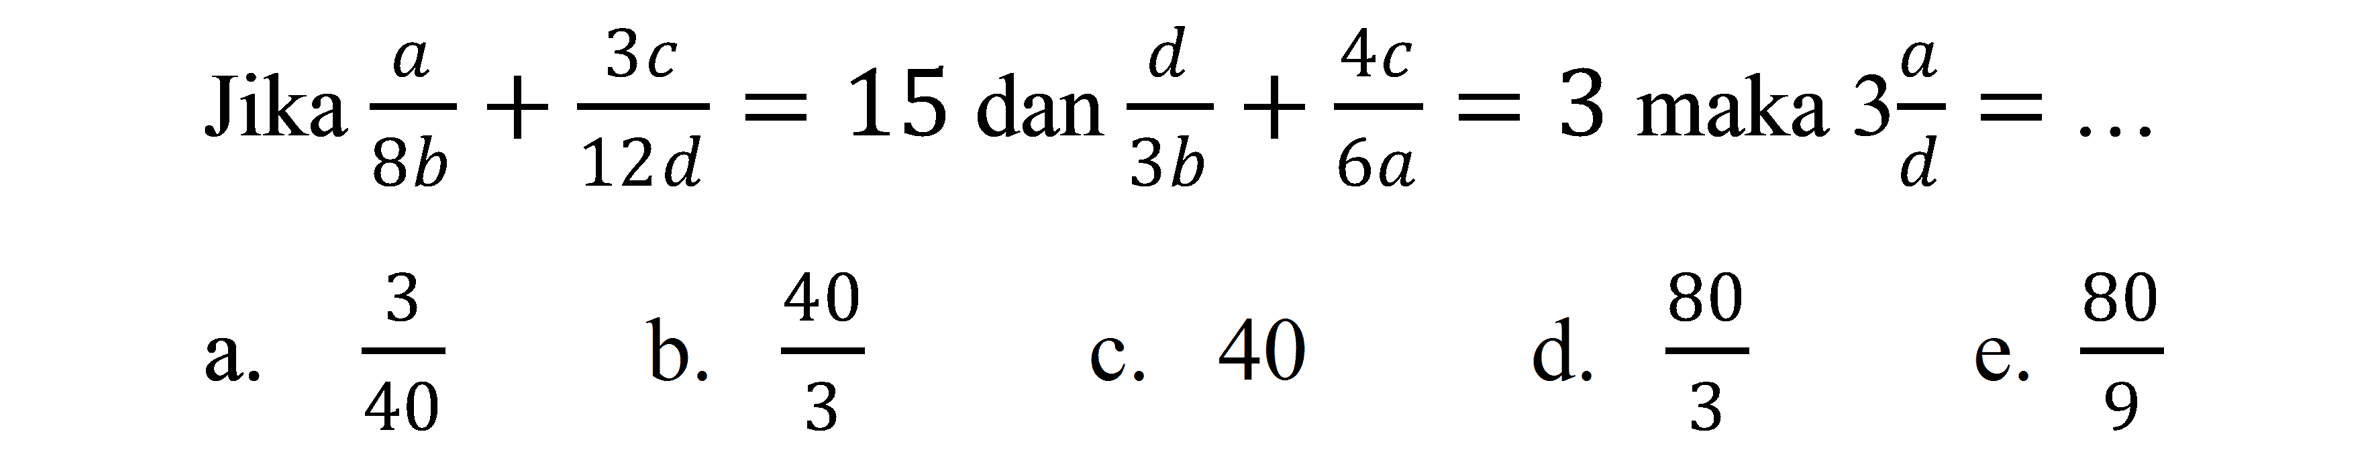 Jika  (a)/(8 b)+(3 c)/(12 d)=15 dan (d)/(3 b)+(4 c)/(6 a)=3  maka  3 (a)/(d)=... 
a.  (3)/(40) 
b.  (40)/(3) 
c. 40
d.  (80)/(3) 
e.  (80)/(9) 